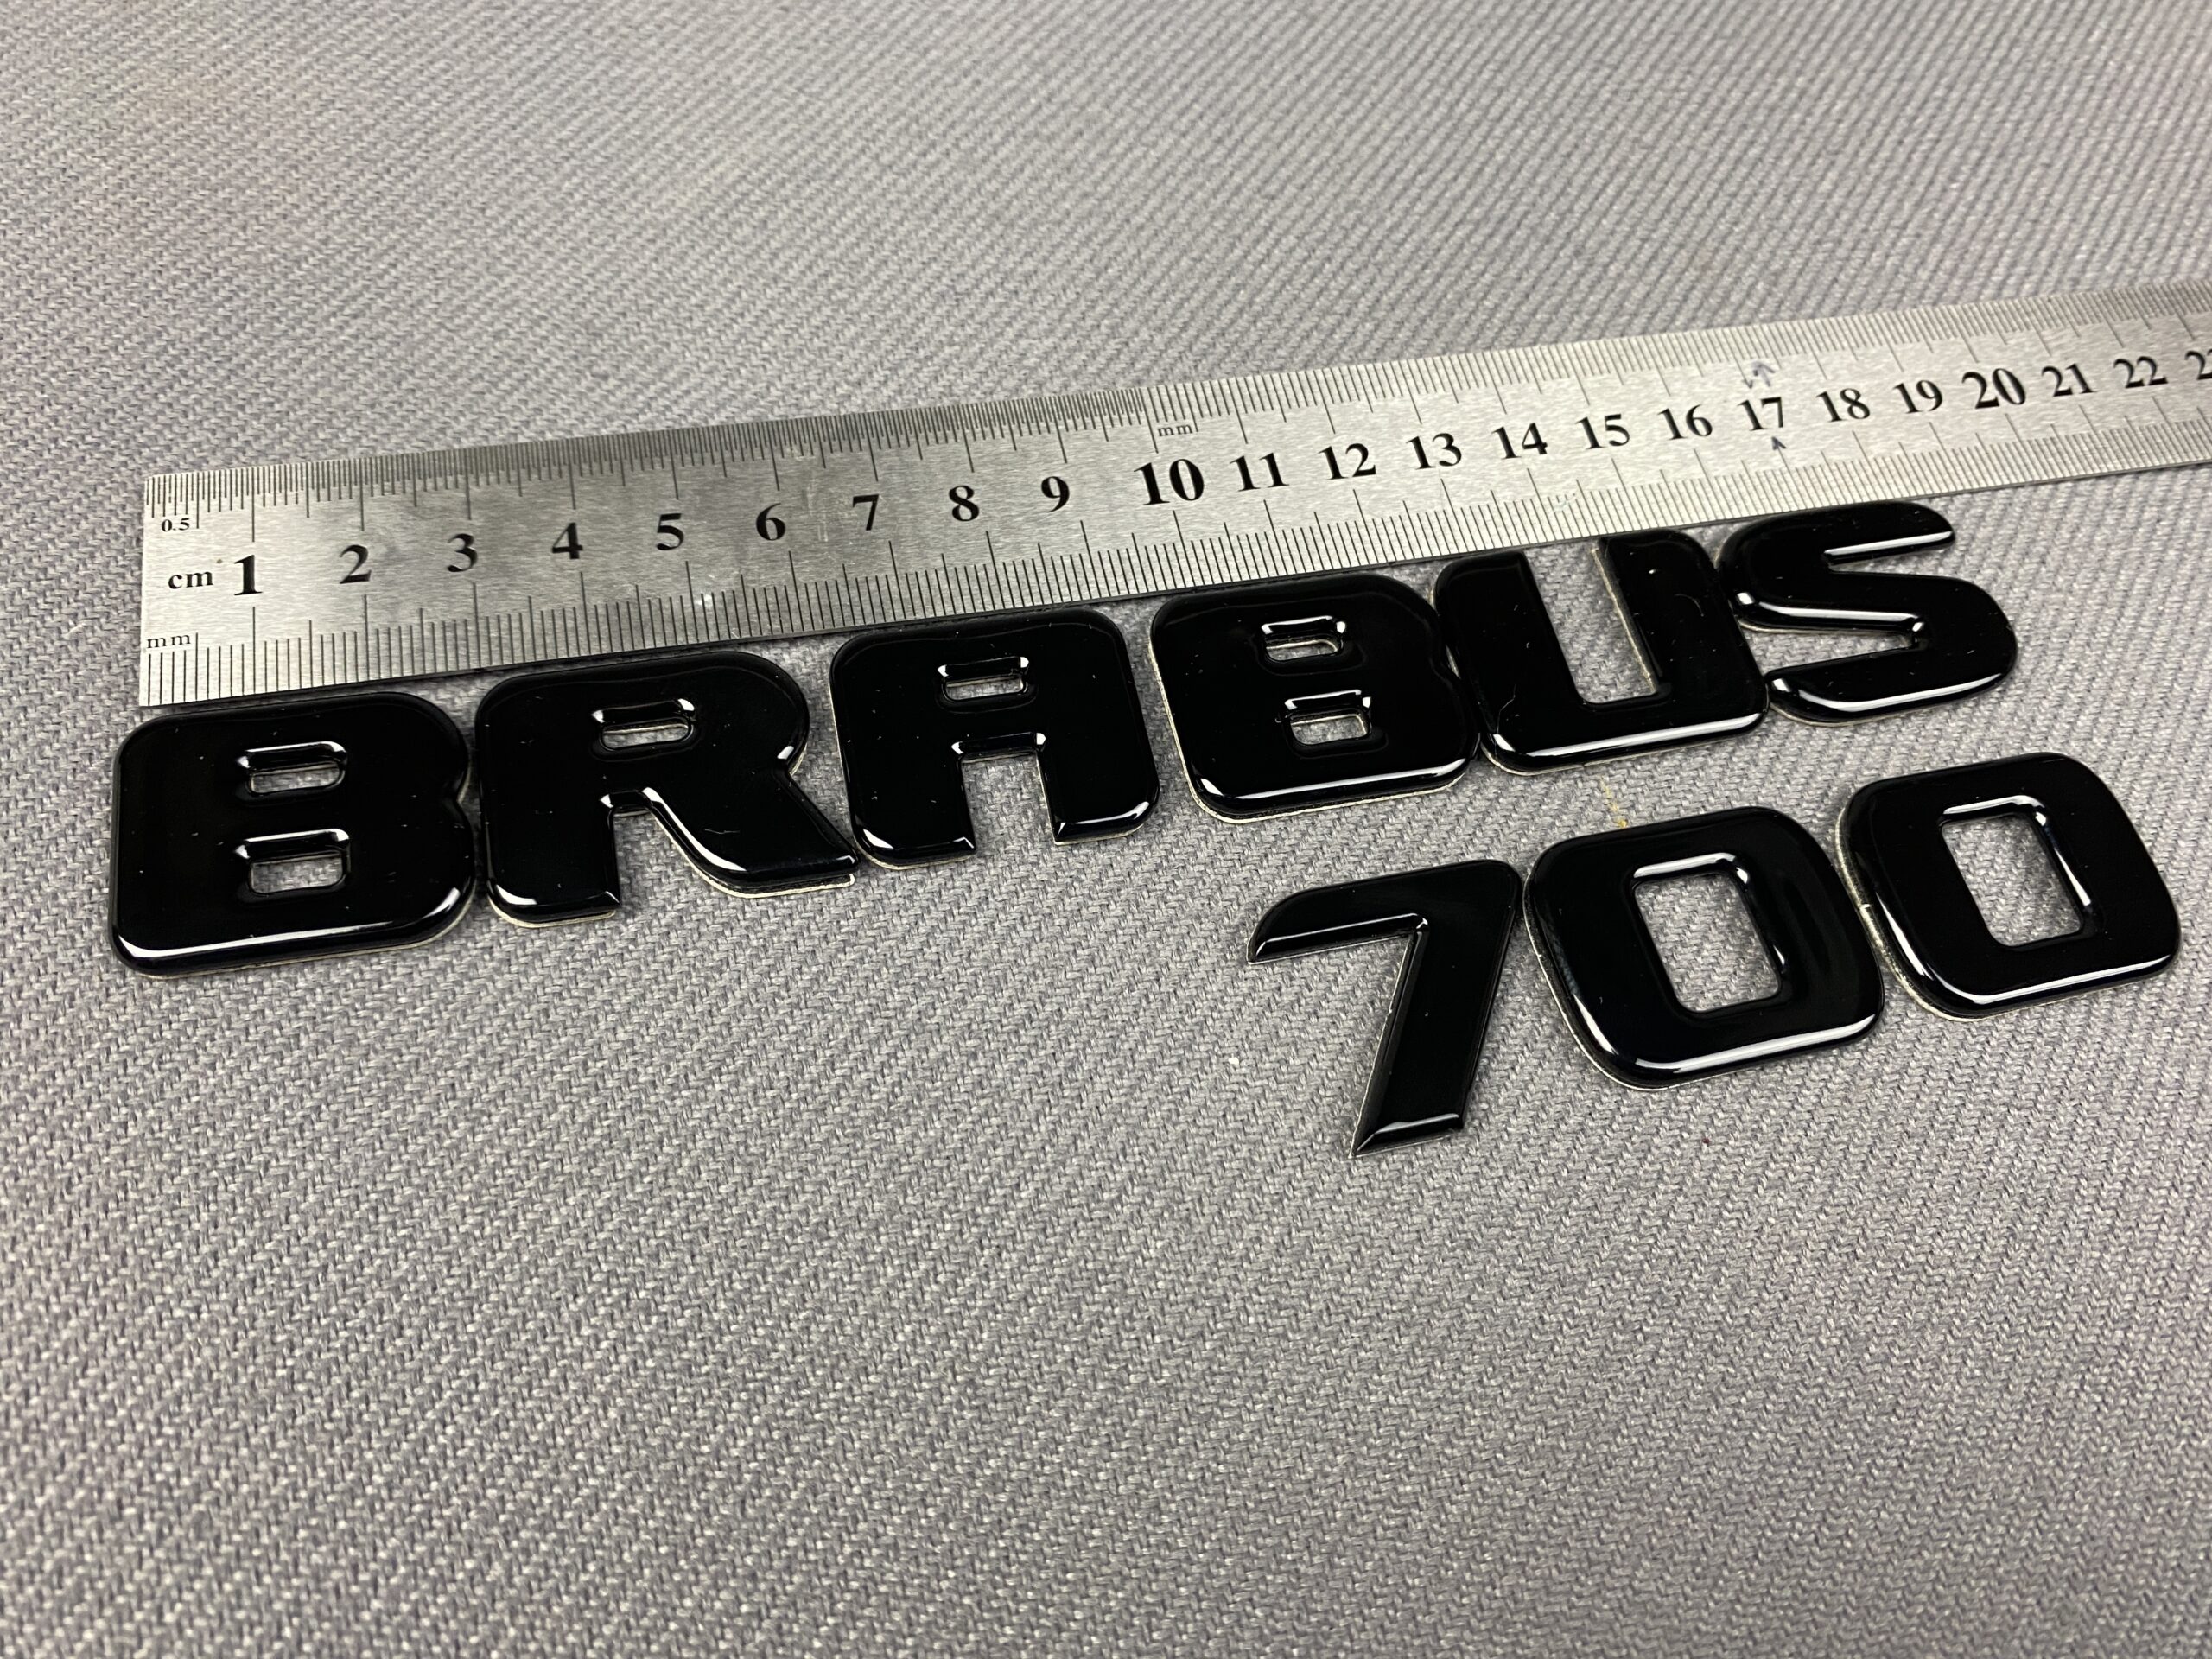 Metal Brabus 700 rear trunk letters emblem logo badges for